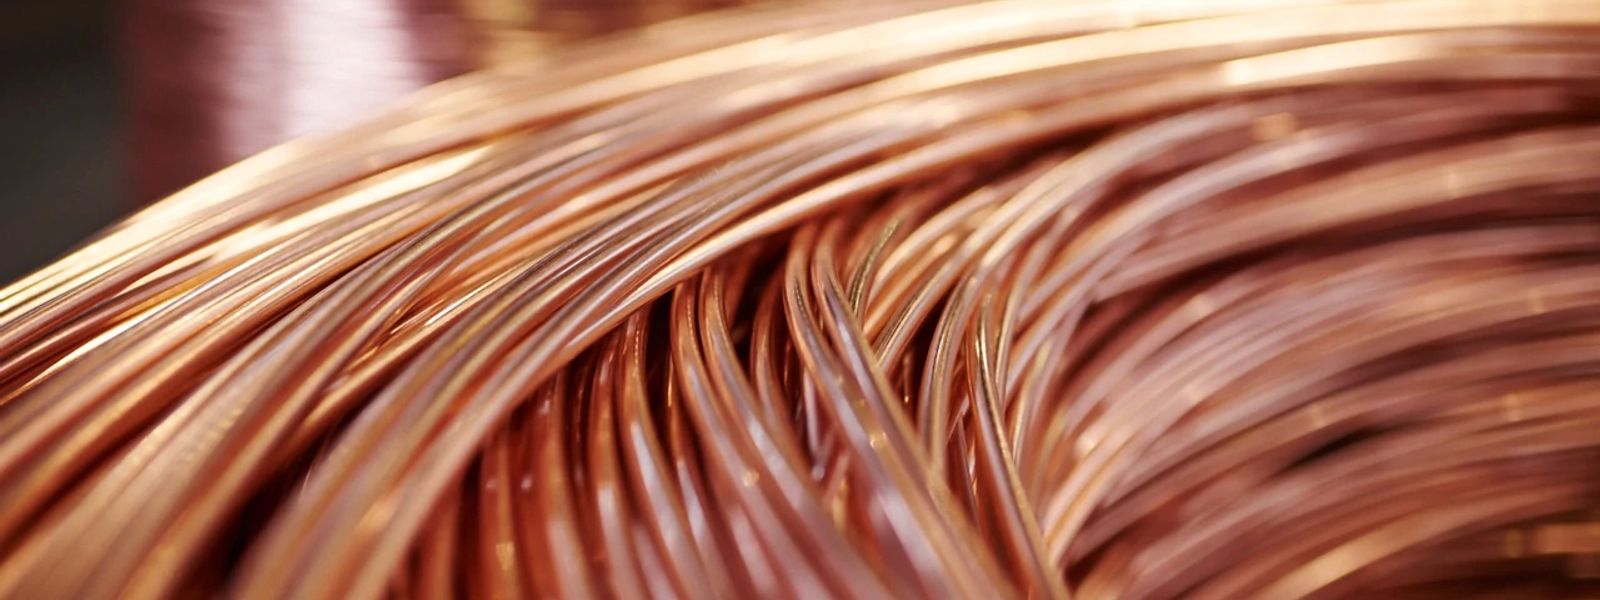 copper coil close up